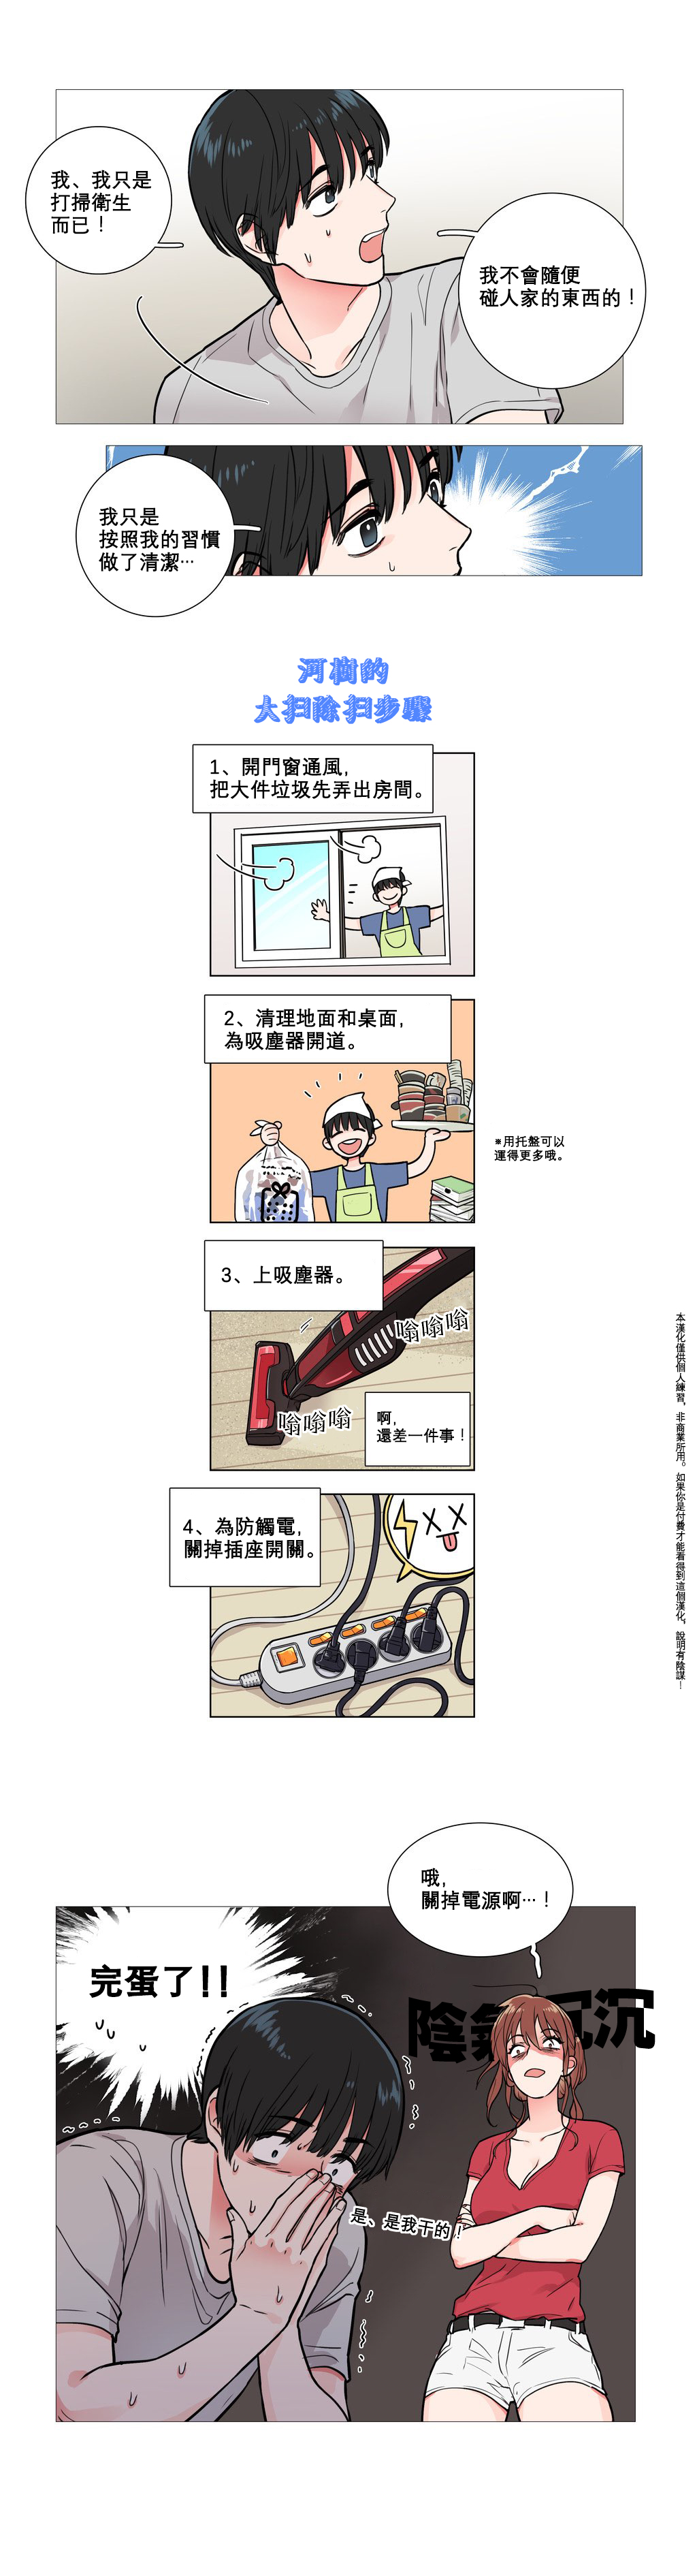 【ジンシャン】サディスティックビューティーCh.1-27【中国語】【17汉化】